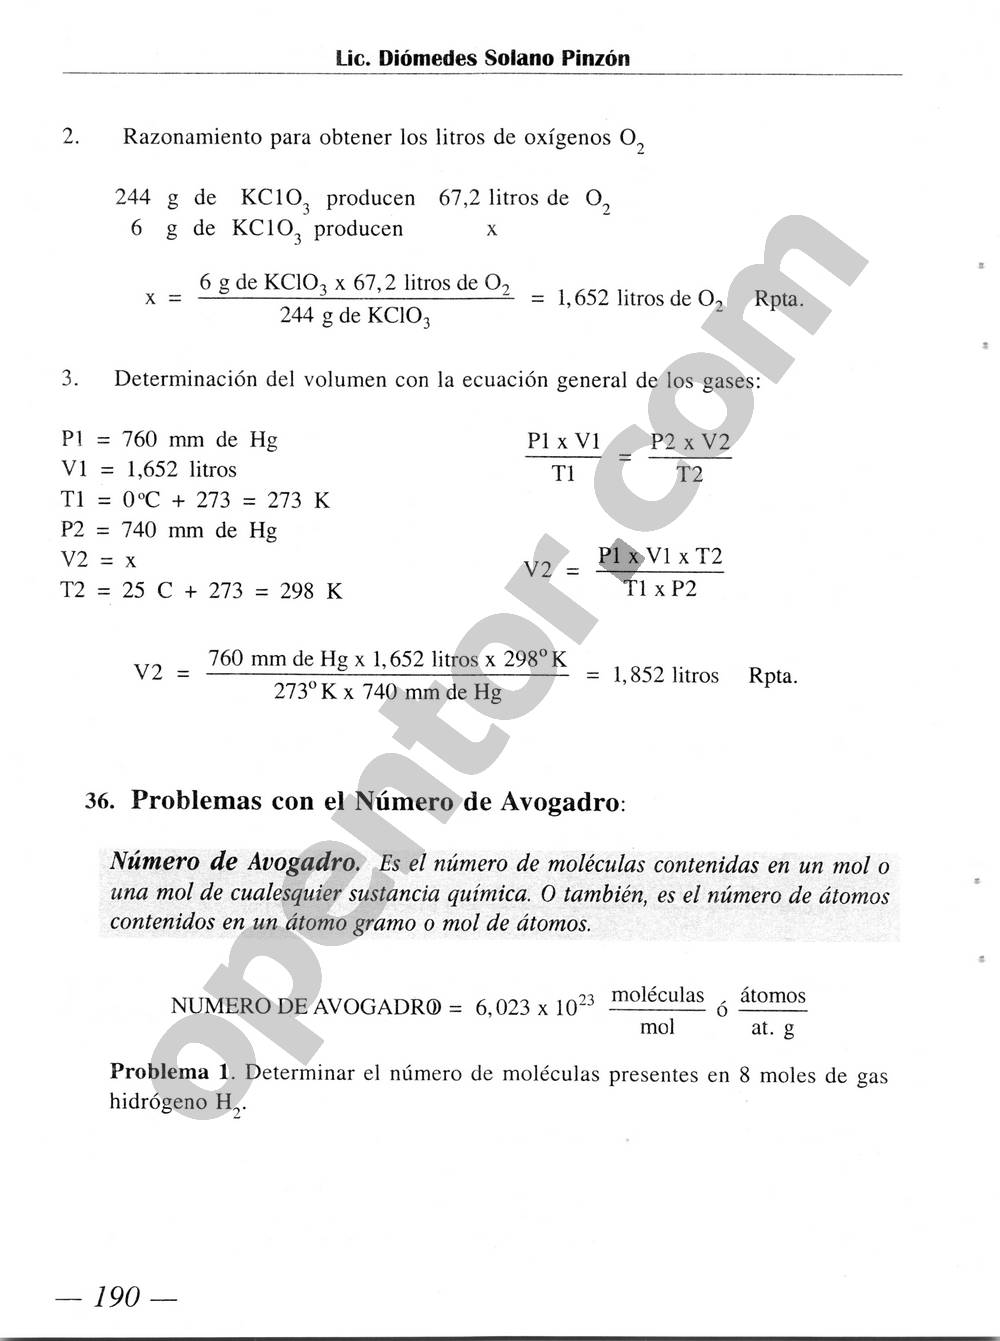 Química Simplificada de Diómedes Solano - Página 190